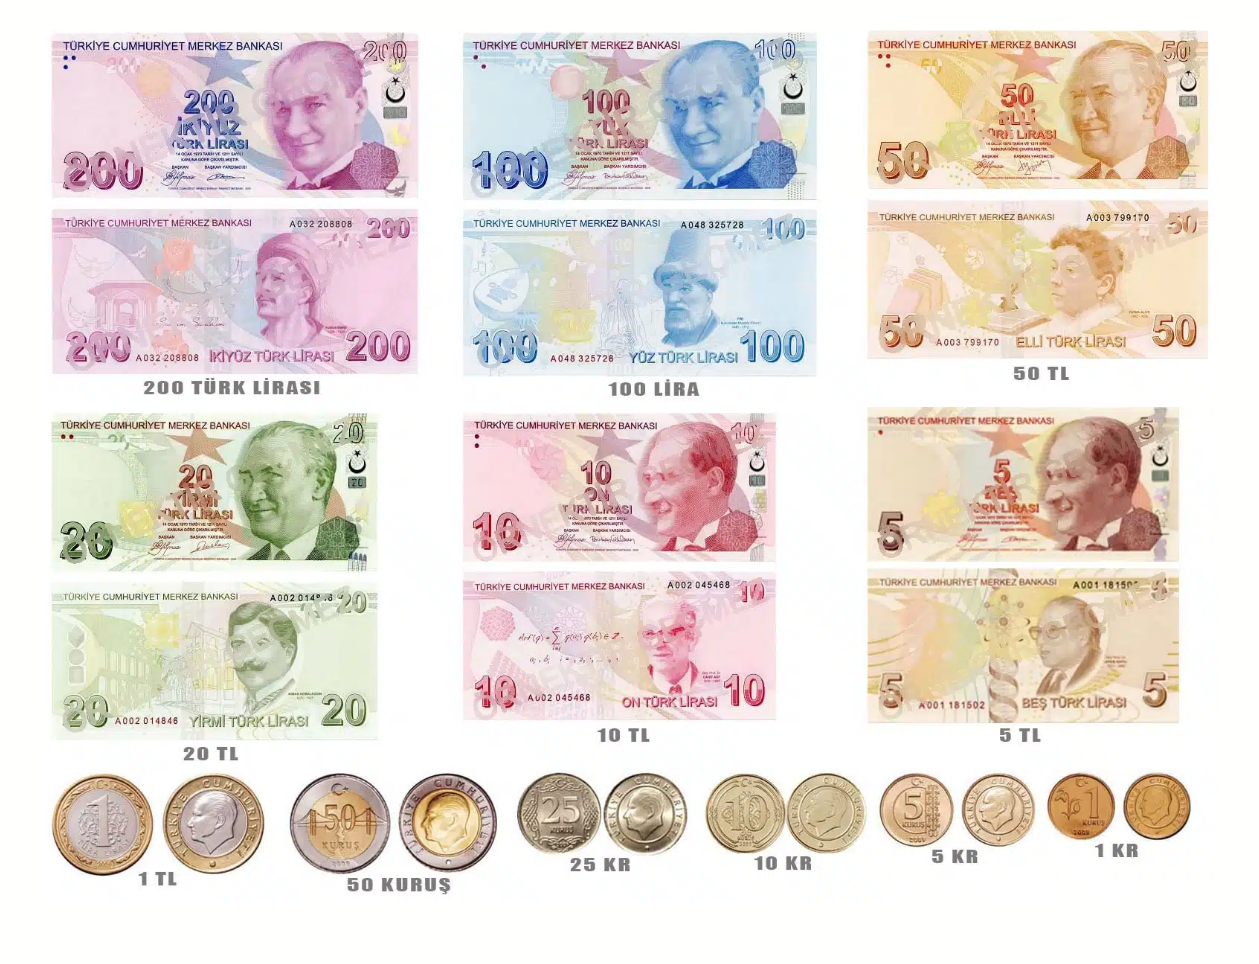 Актуальные банкноты и монеты. Монеты до 1 TRY называются куруши. Источник: madeinturkeytours.com